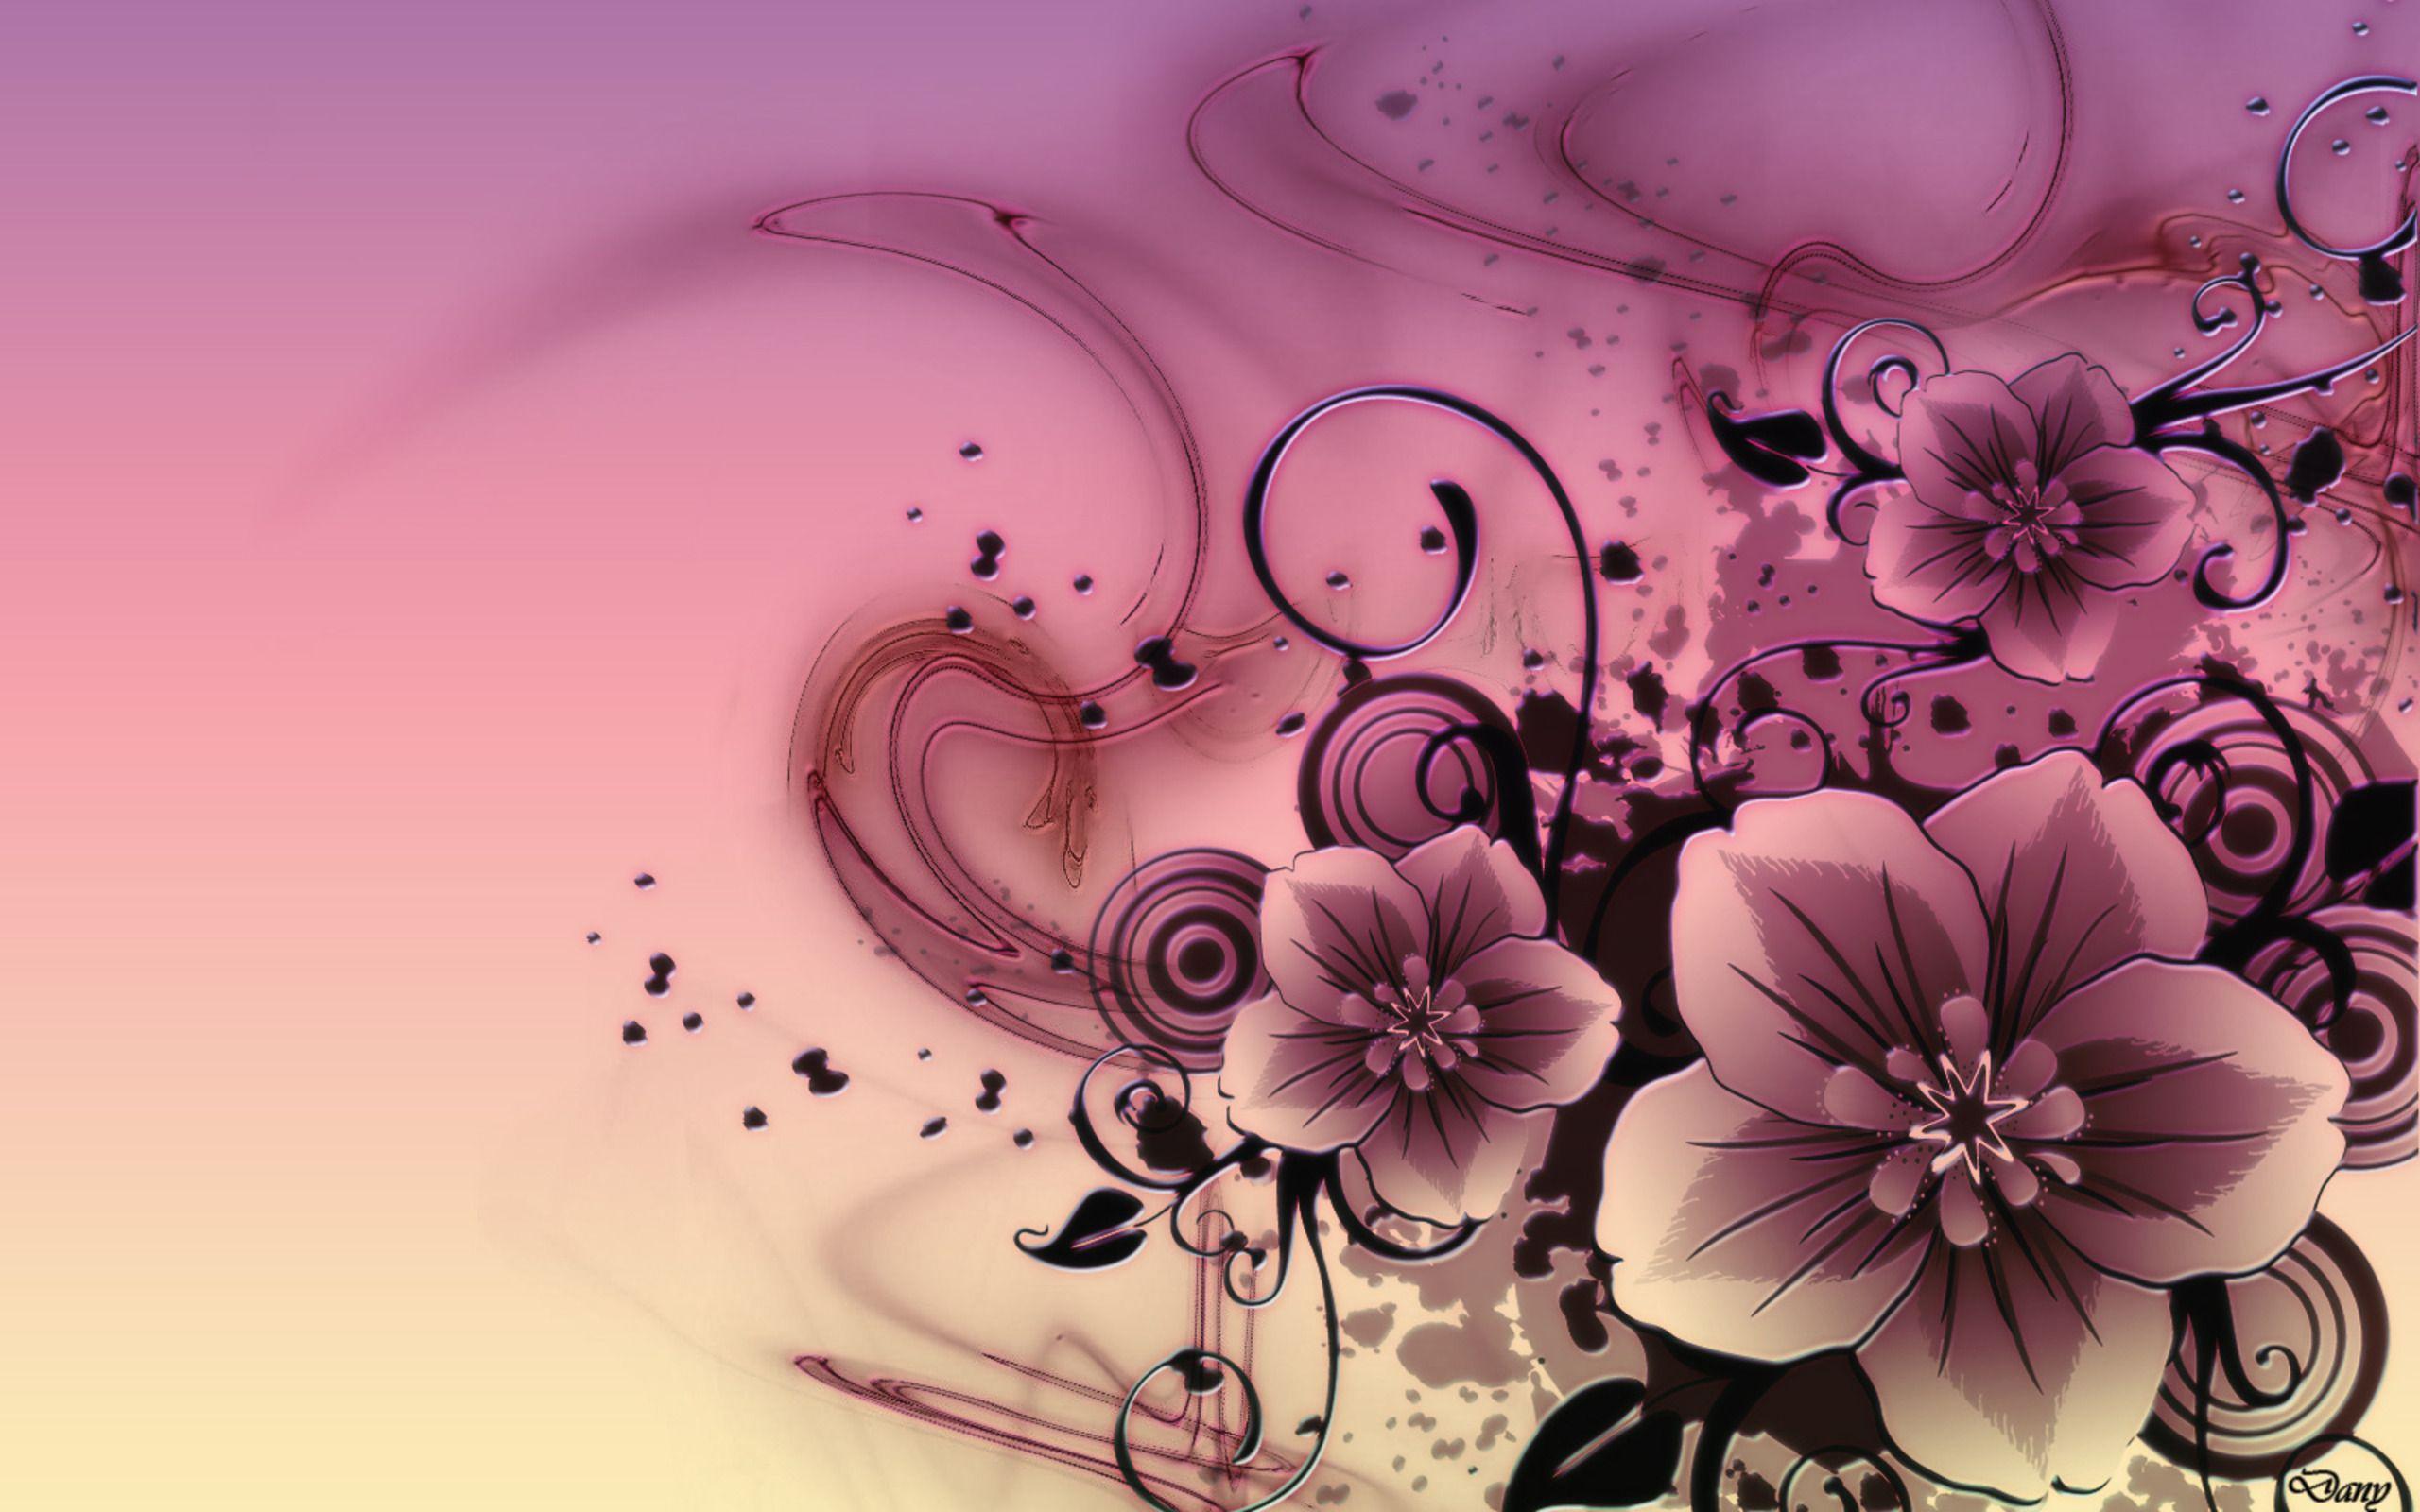 Abstract Flowers HD desktop wallpaper, High Definition, Fullscreen